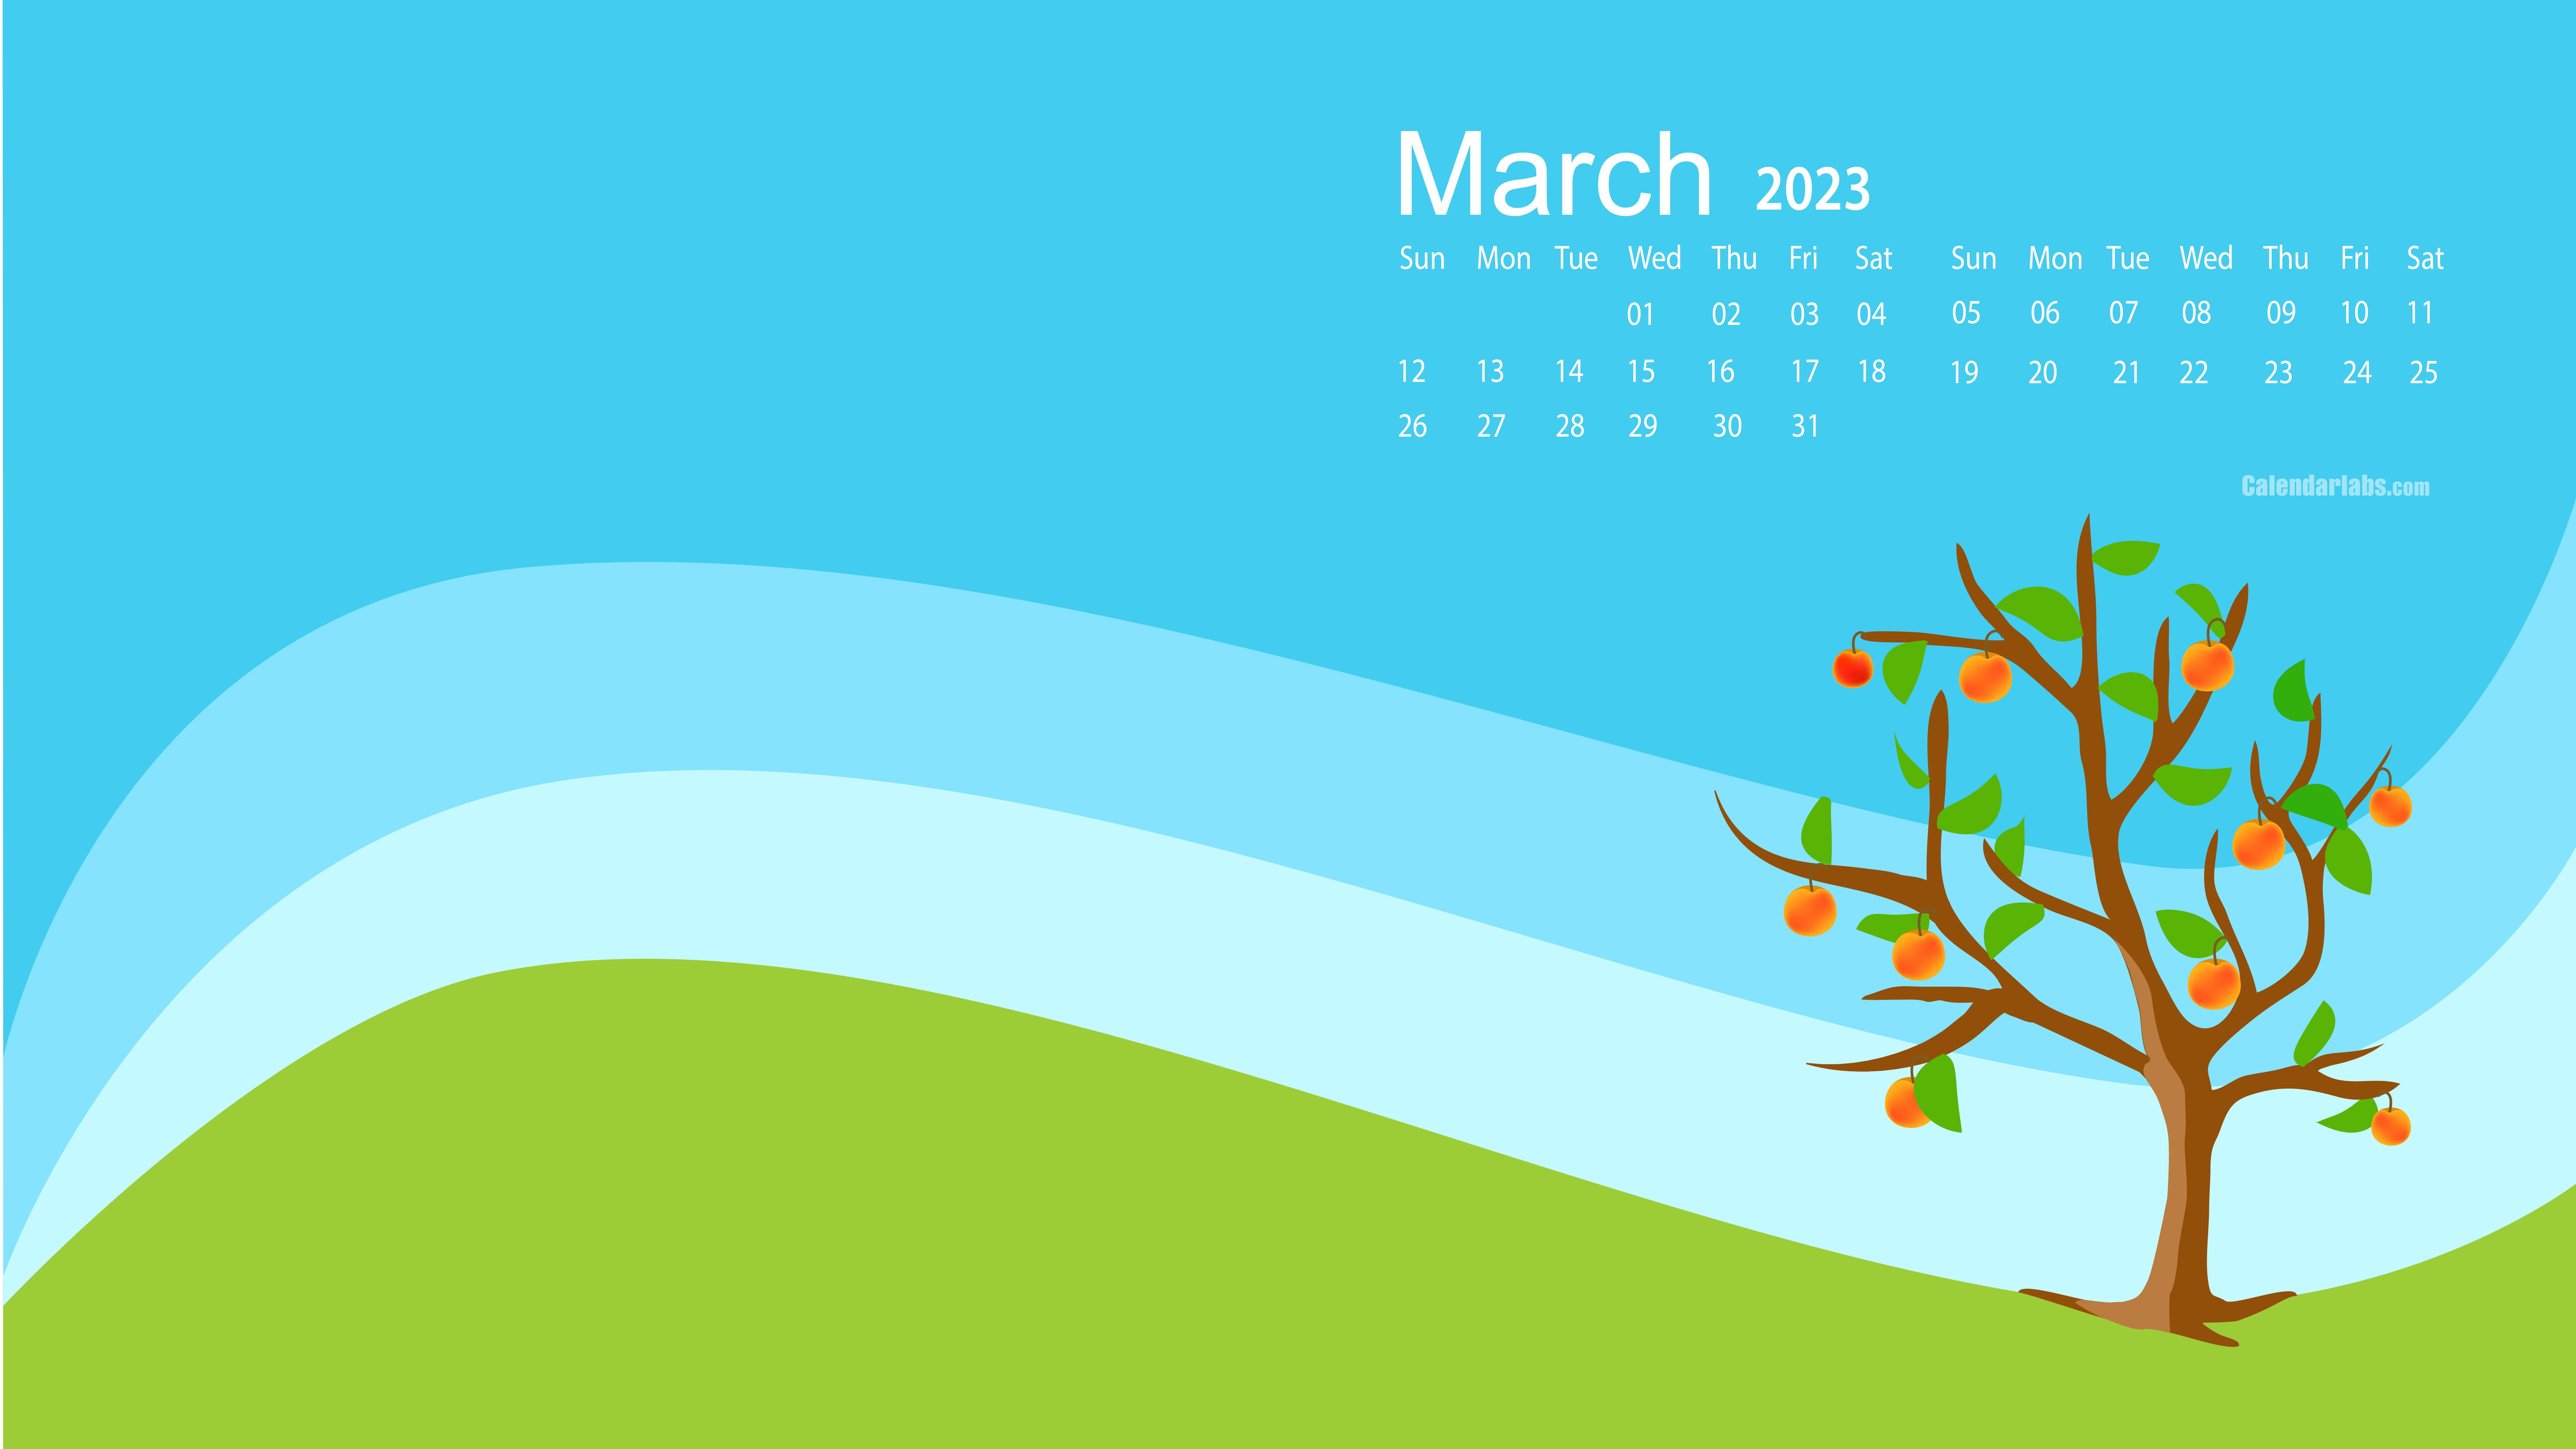 March 2023 Desktop Wallpaper Calendar - CalendarLabs